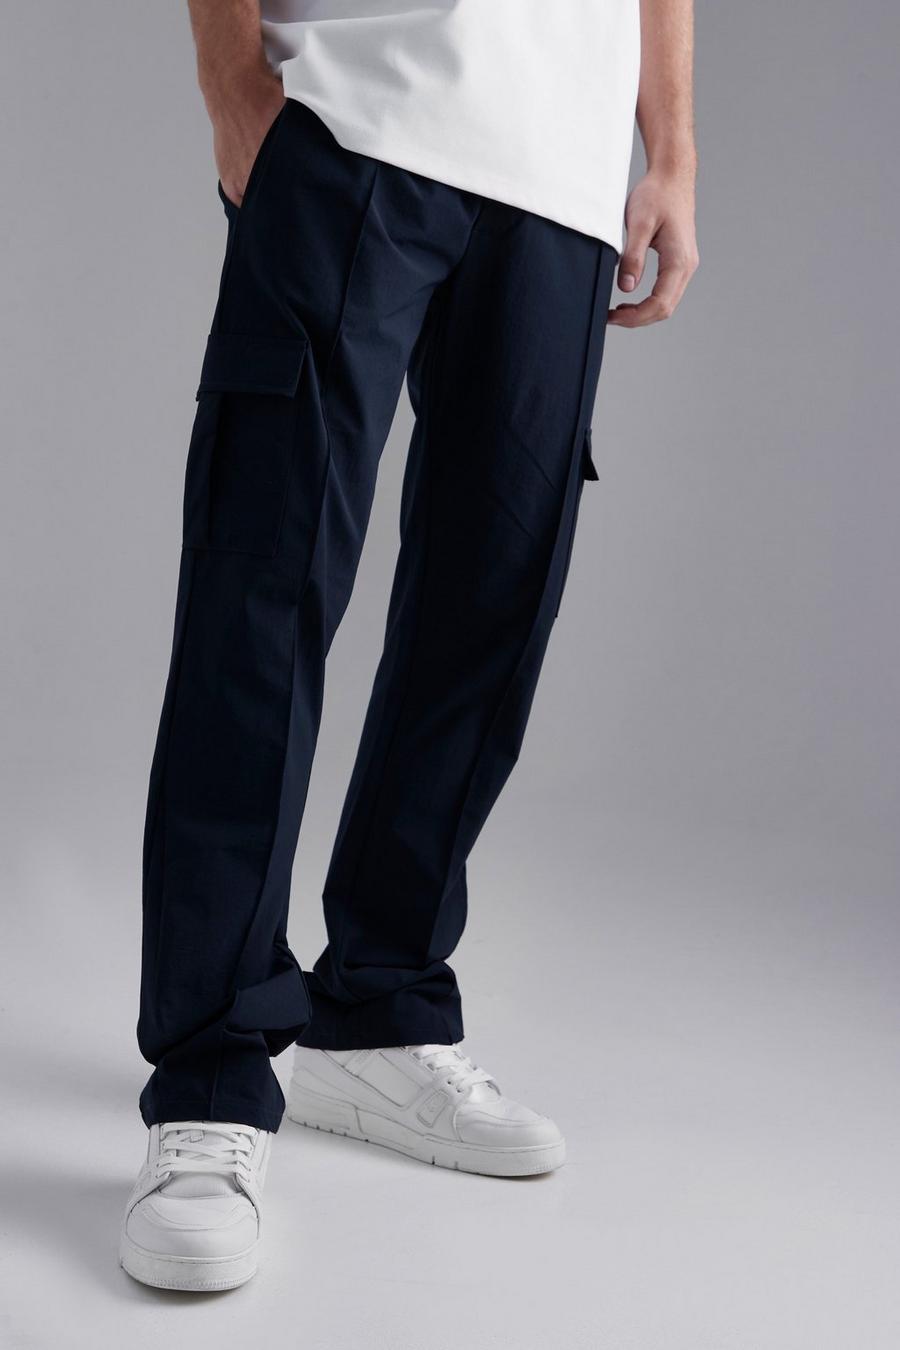 Pantalón ajustado cargo elástico técnico con refuerzo, Navy blu oltremare